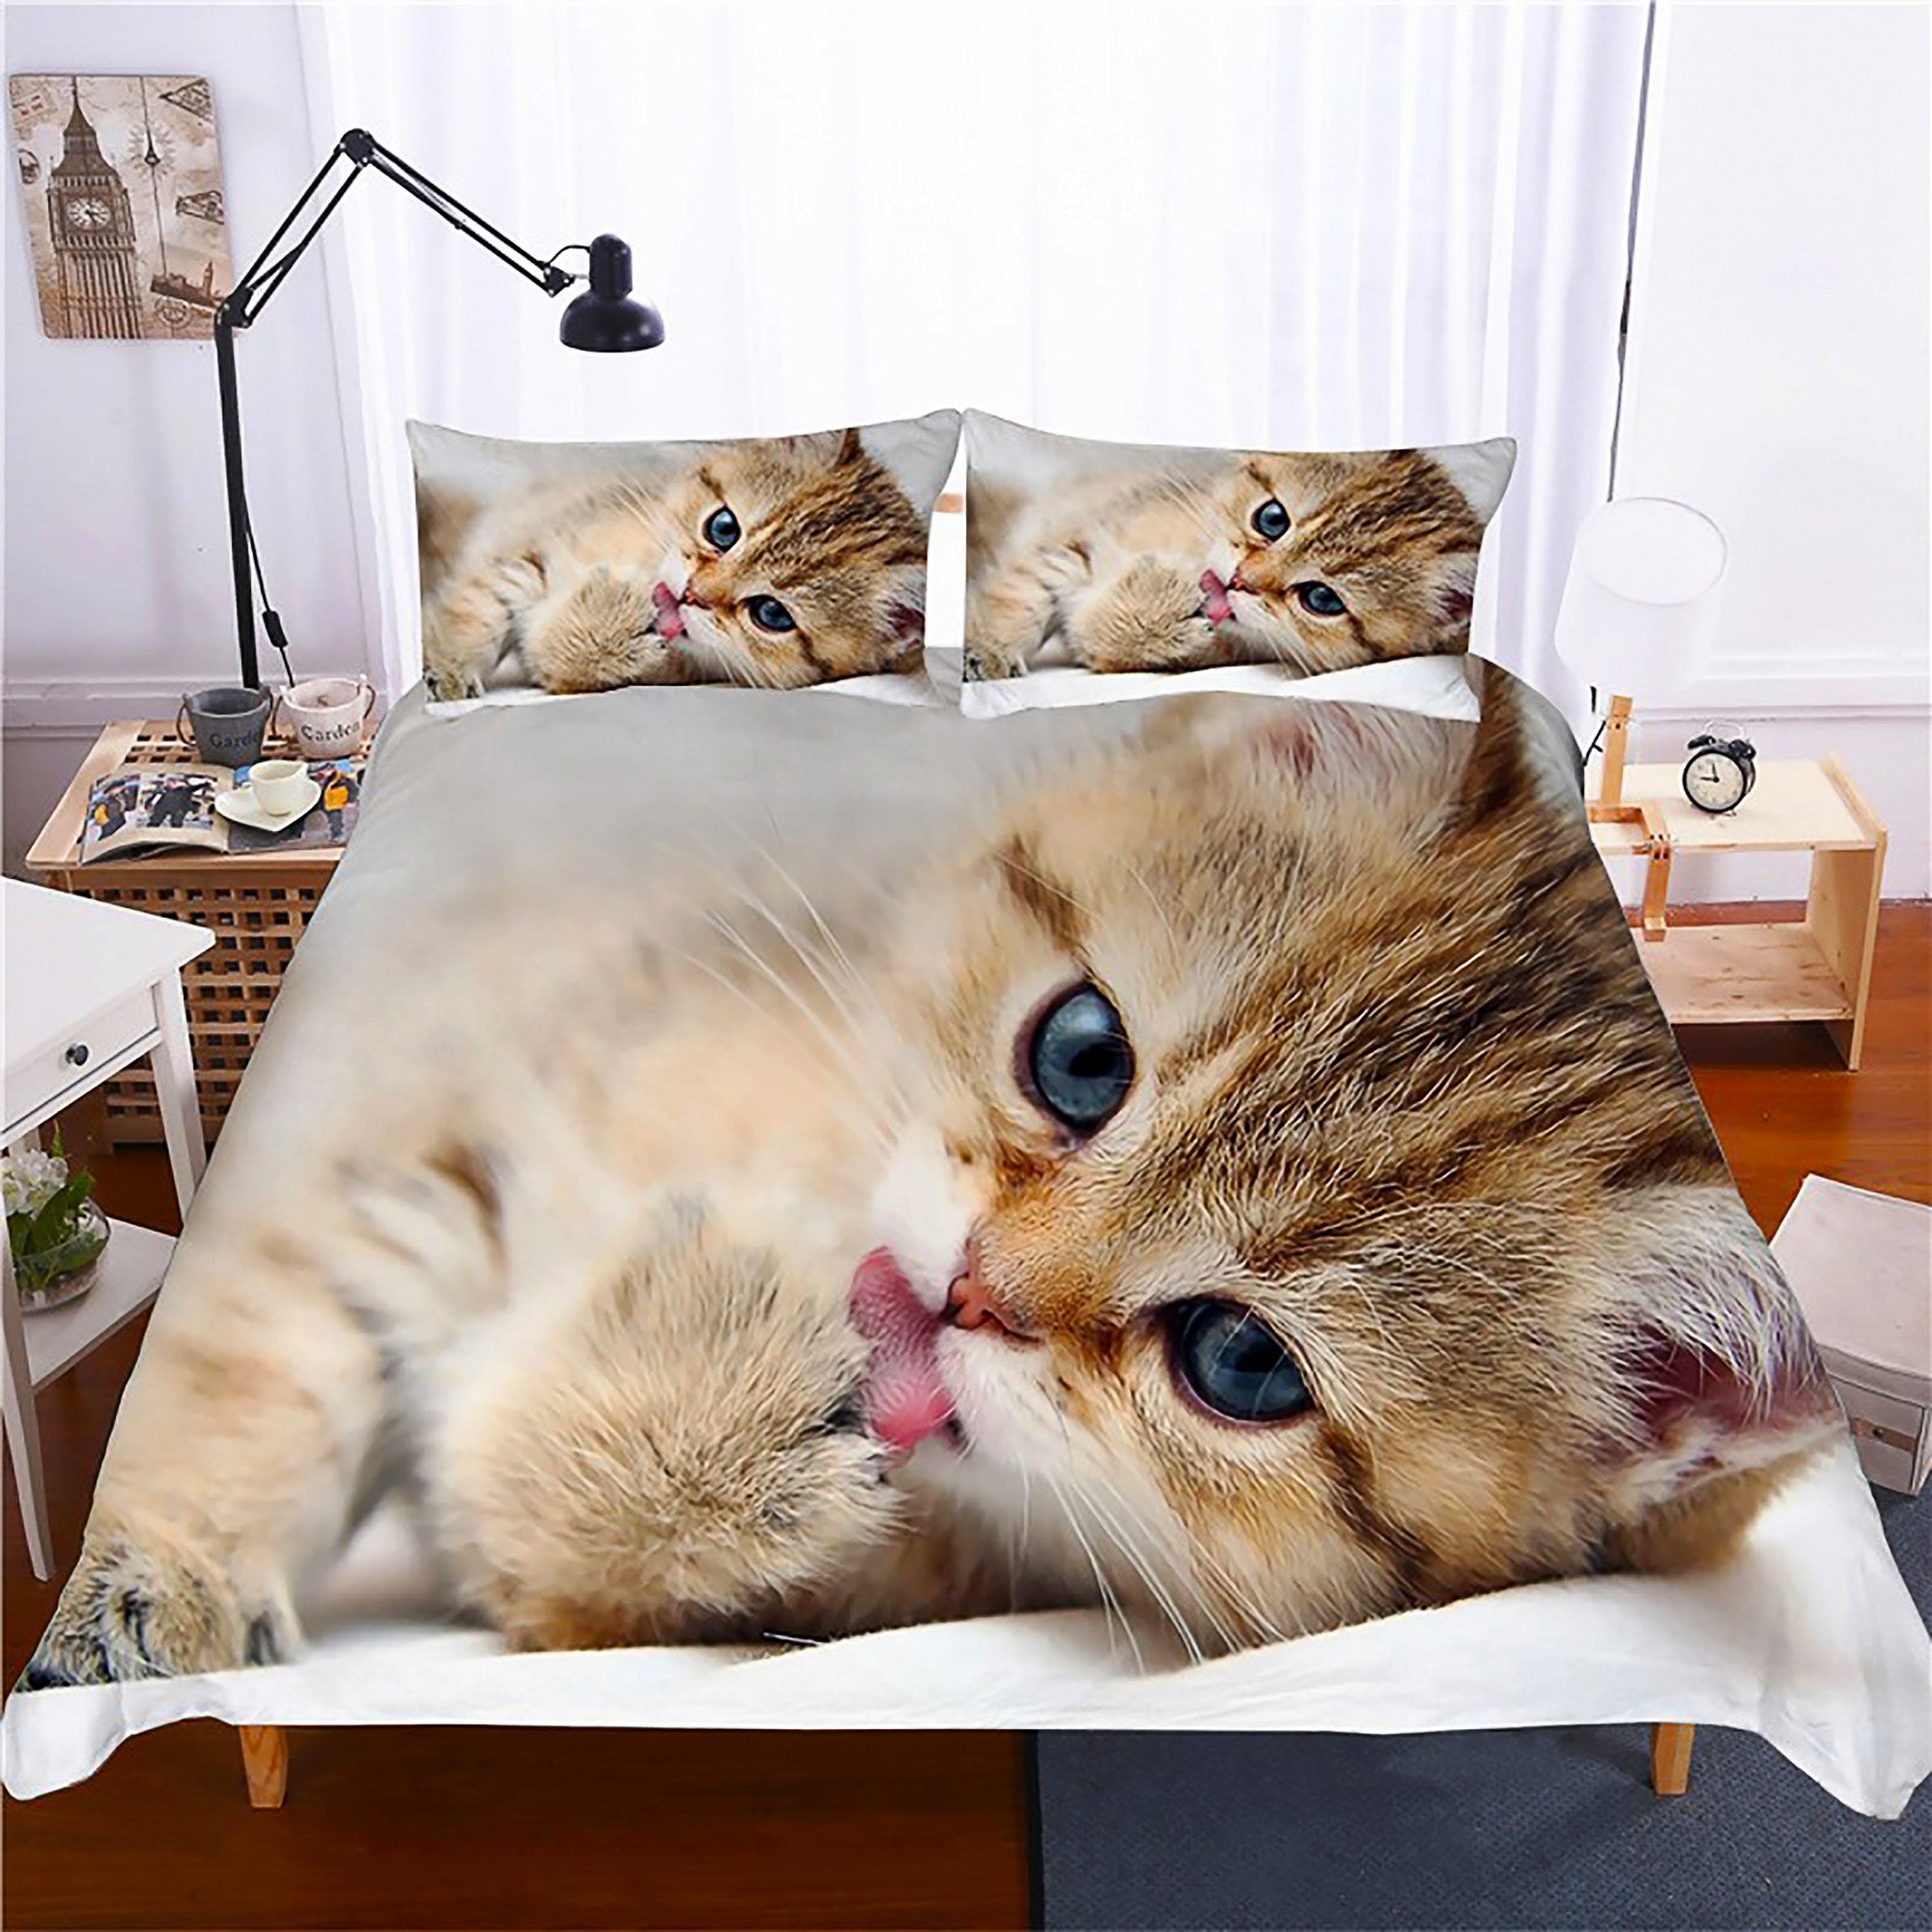 https://www.lusystore.com/cdn/shop/products/cute-bedding-sets-kitten-quilt-cover-kids-bedding-set-kawaii-d567-500198_1024x1024@2x.jpg?v=1681478101